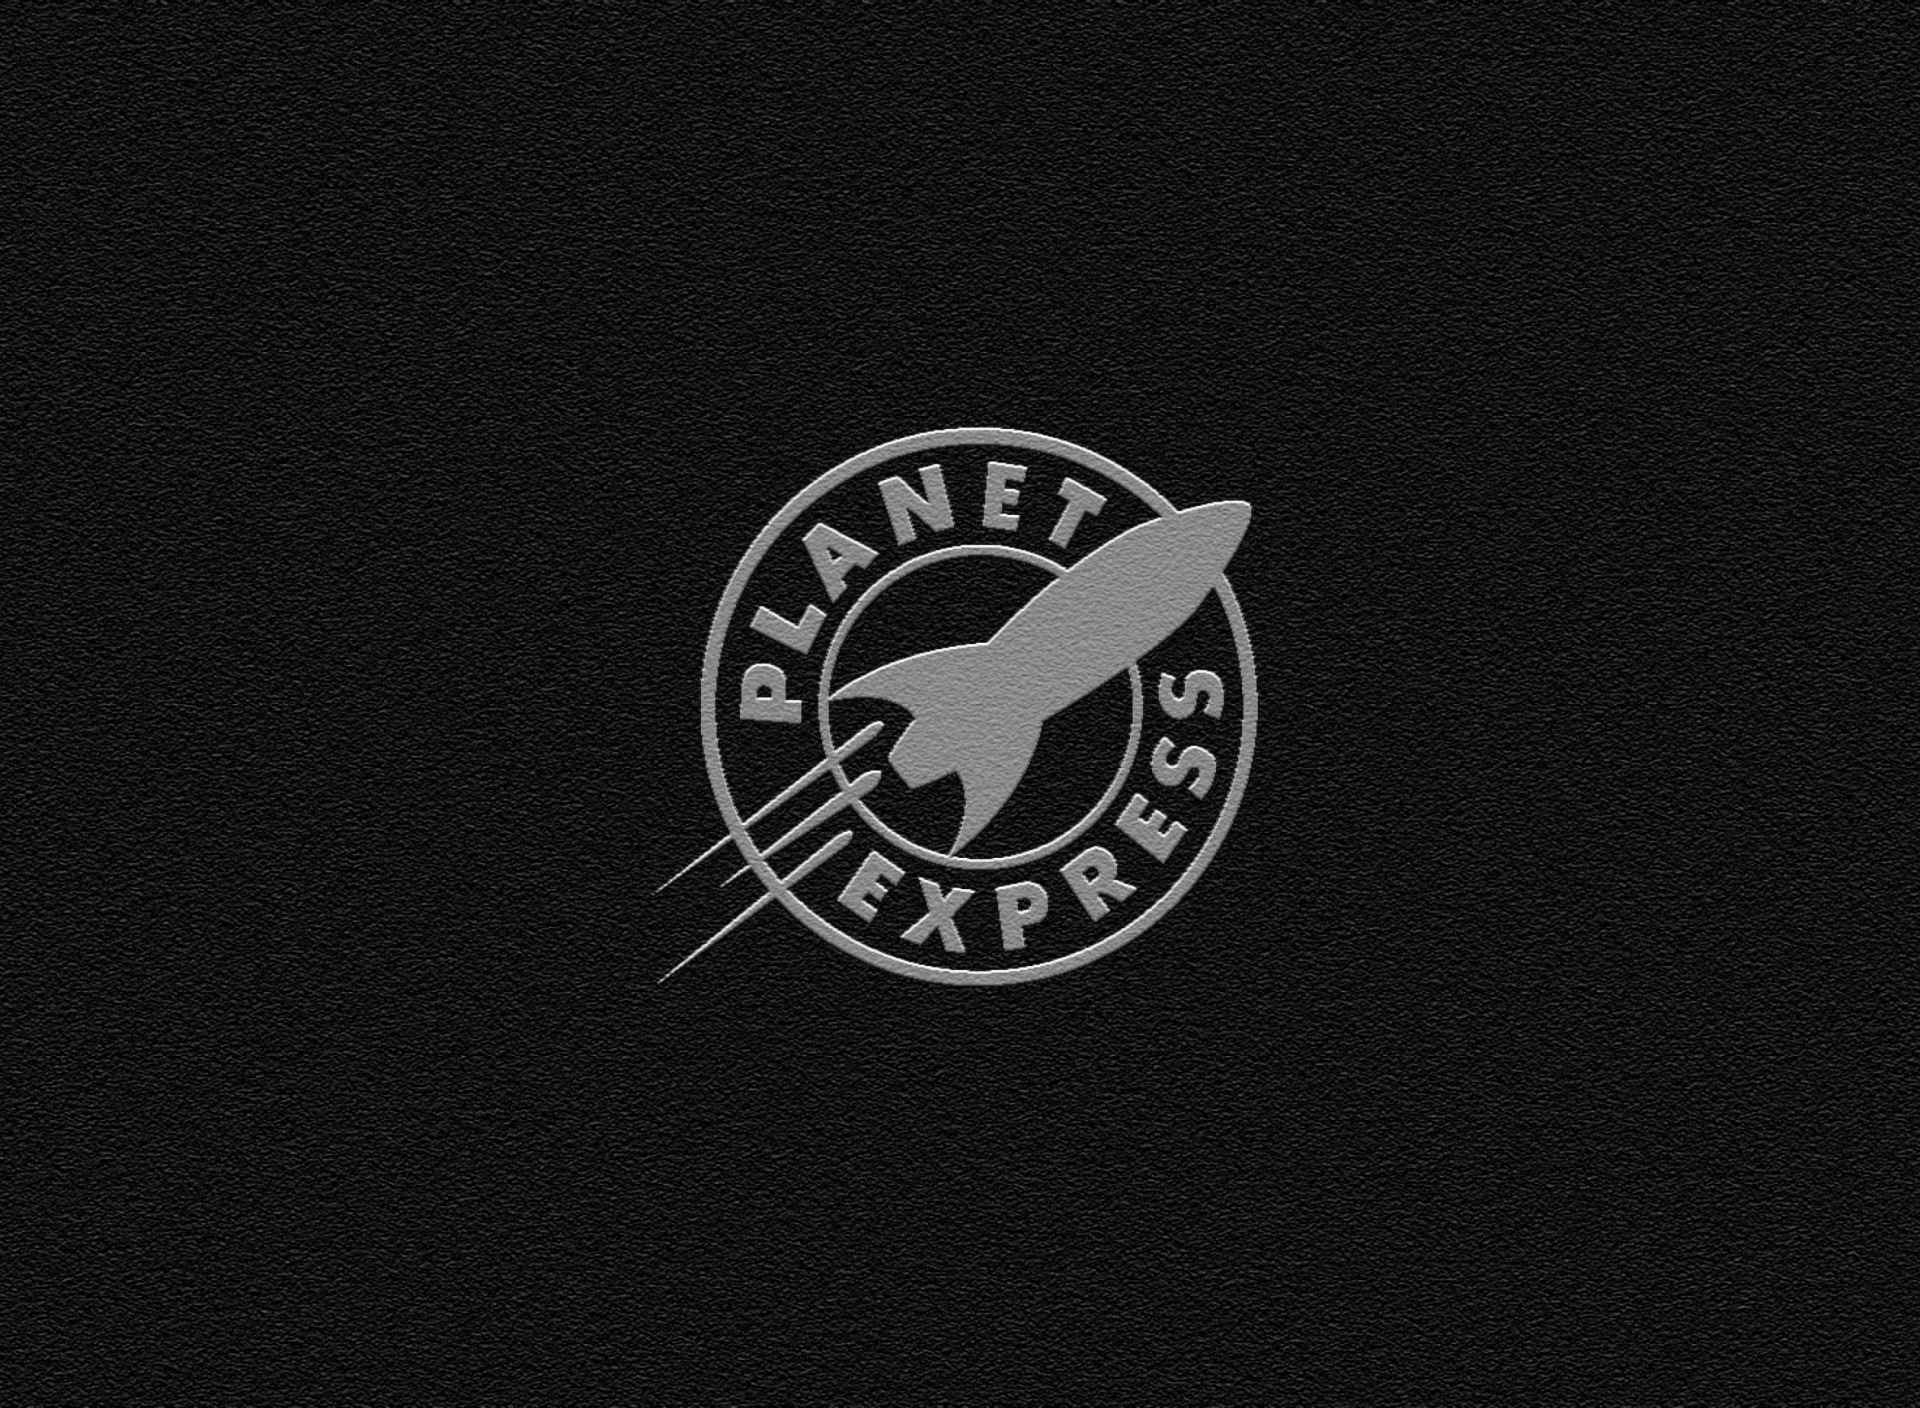 Planet Express screenshot #1 1920x1408